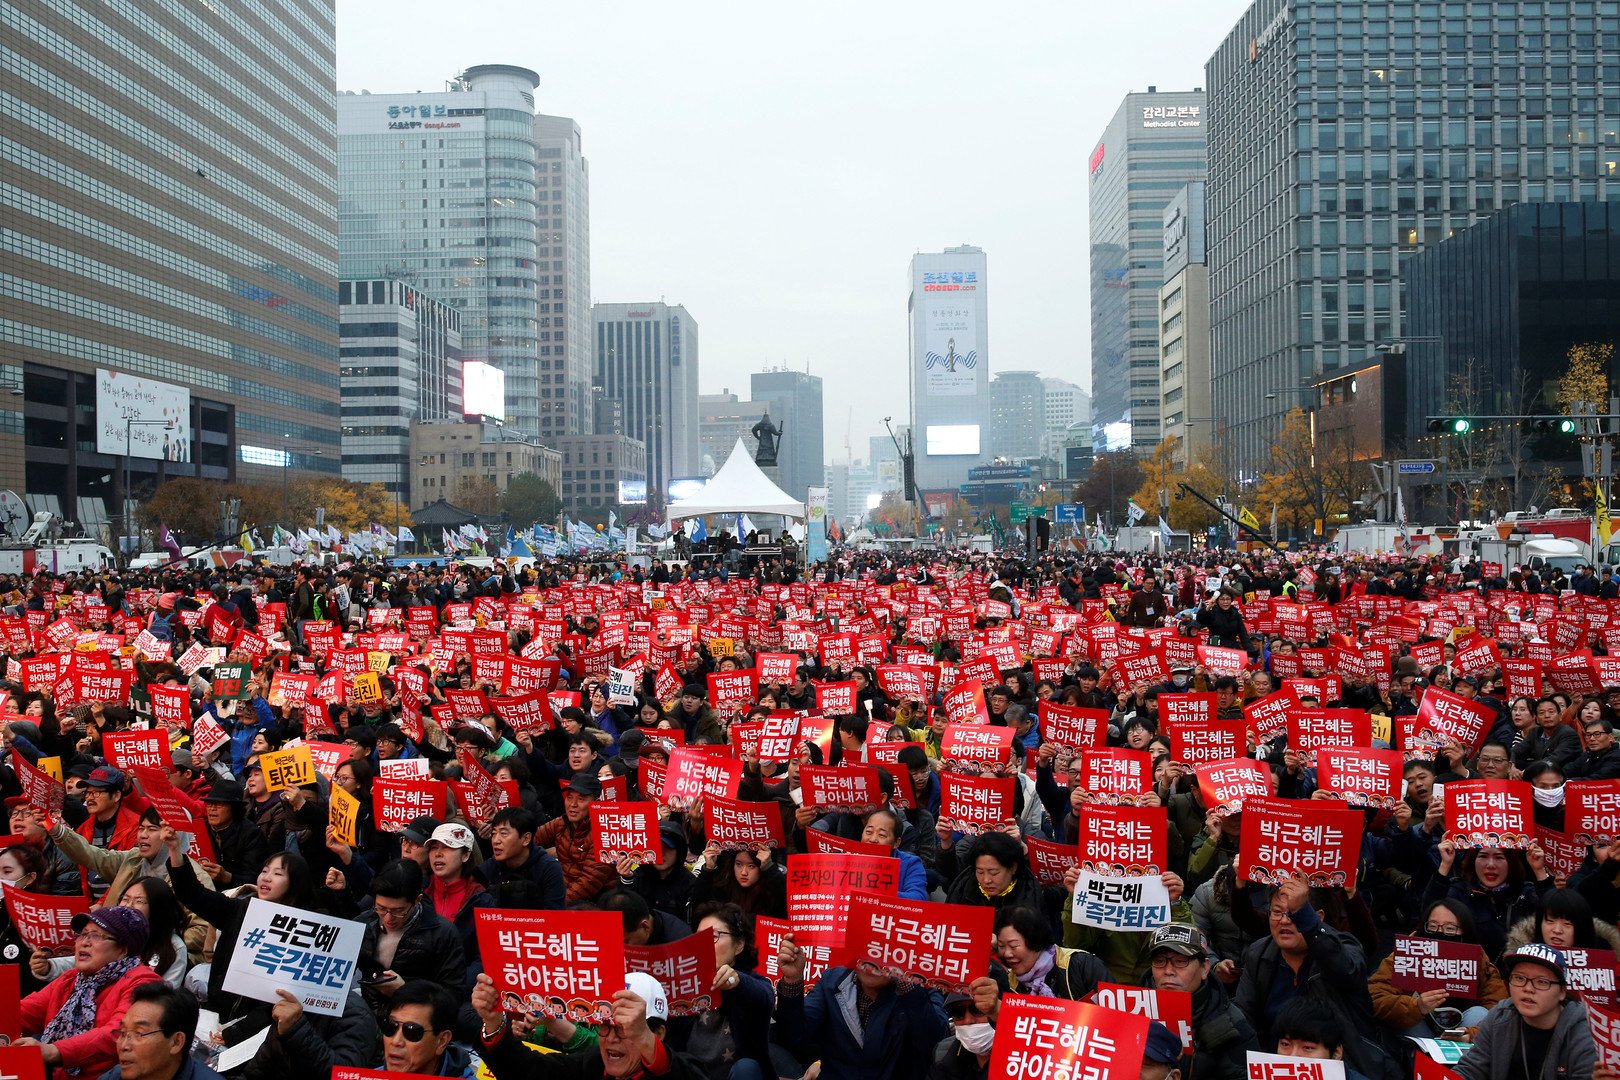 رئيسة كوريا الجنوبية ترفض حضور جلسة البرلمان للنظر في قضايا الفساد 